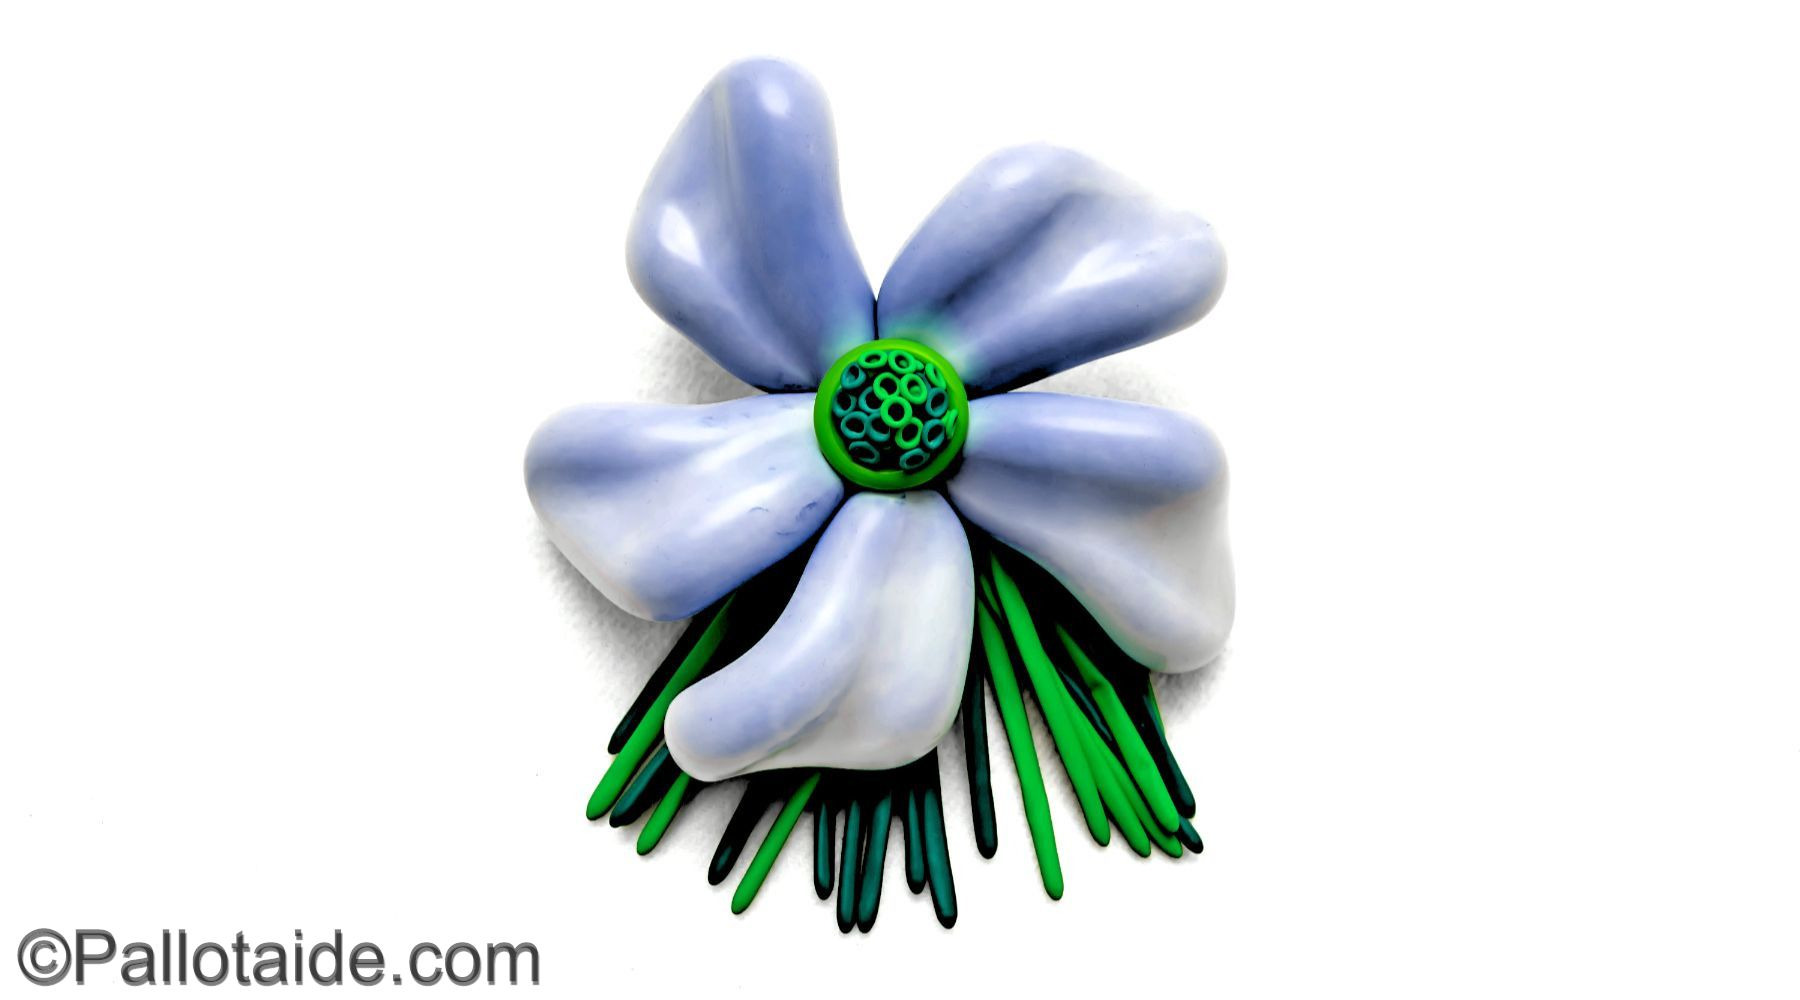 green fantase flower - made using 100% latex balloons by Pallotaide - tehty pelkistä lateksi-ilmapalloista. Fantasiakukka.